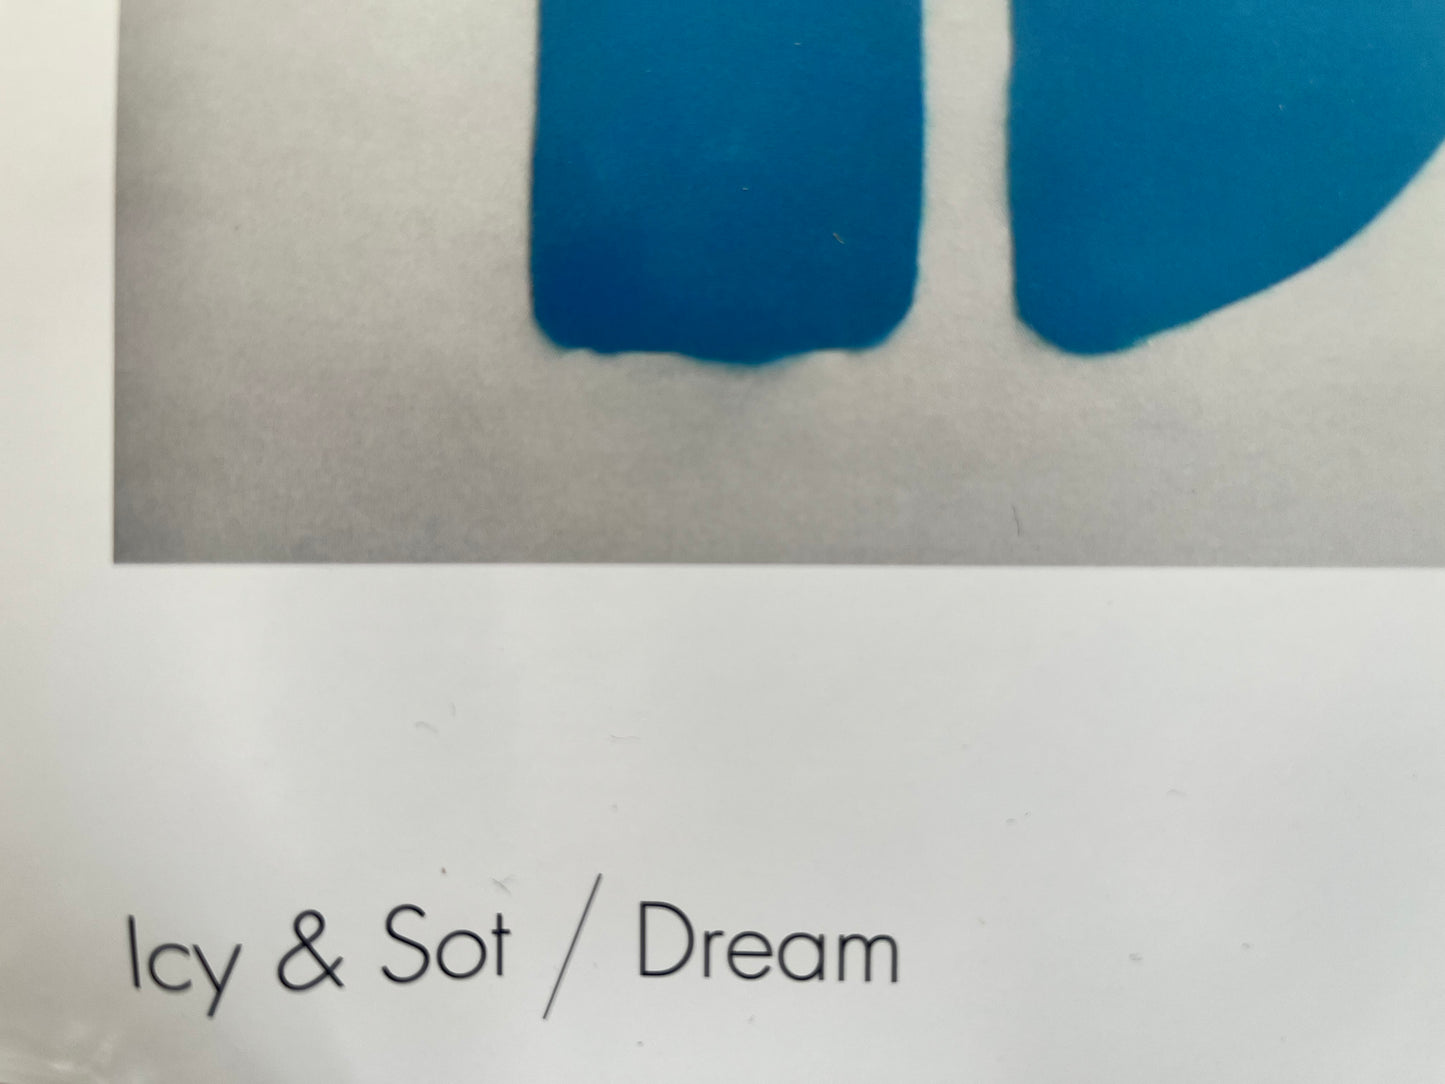 Serigrafia offset - Icy & Sot x MocoMuseum - Dream